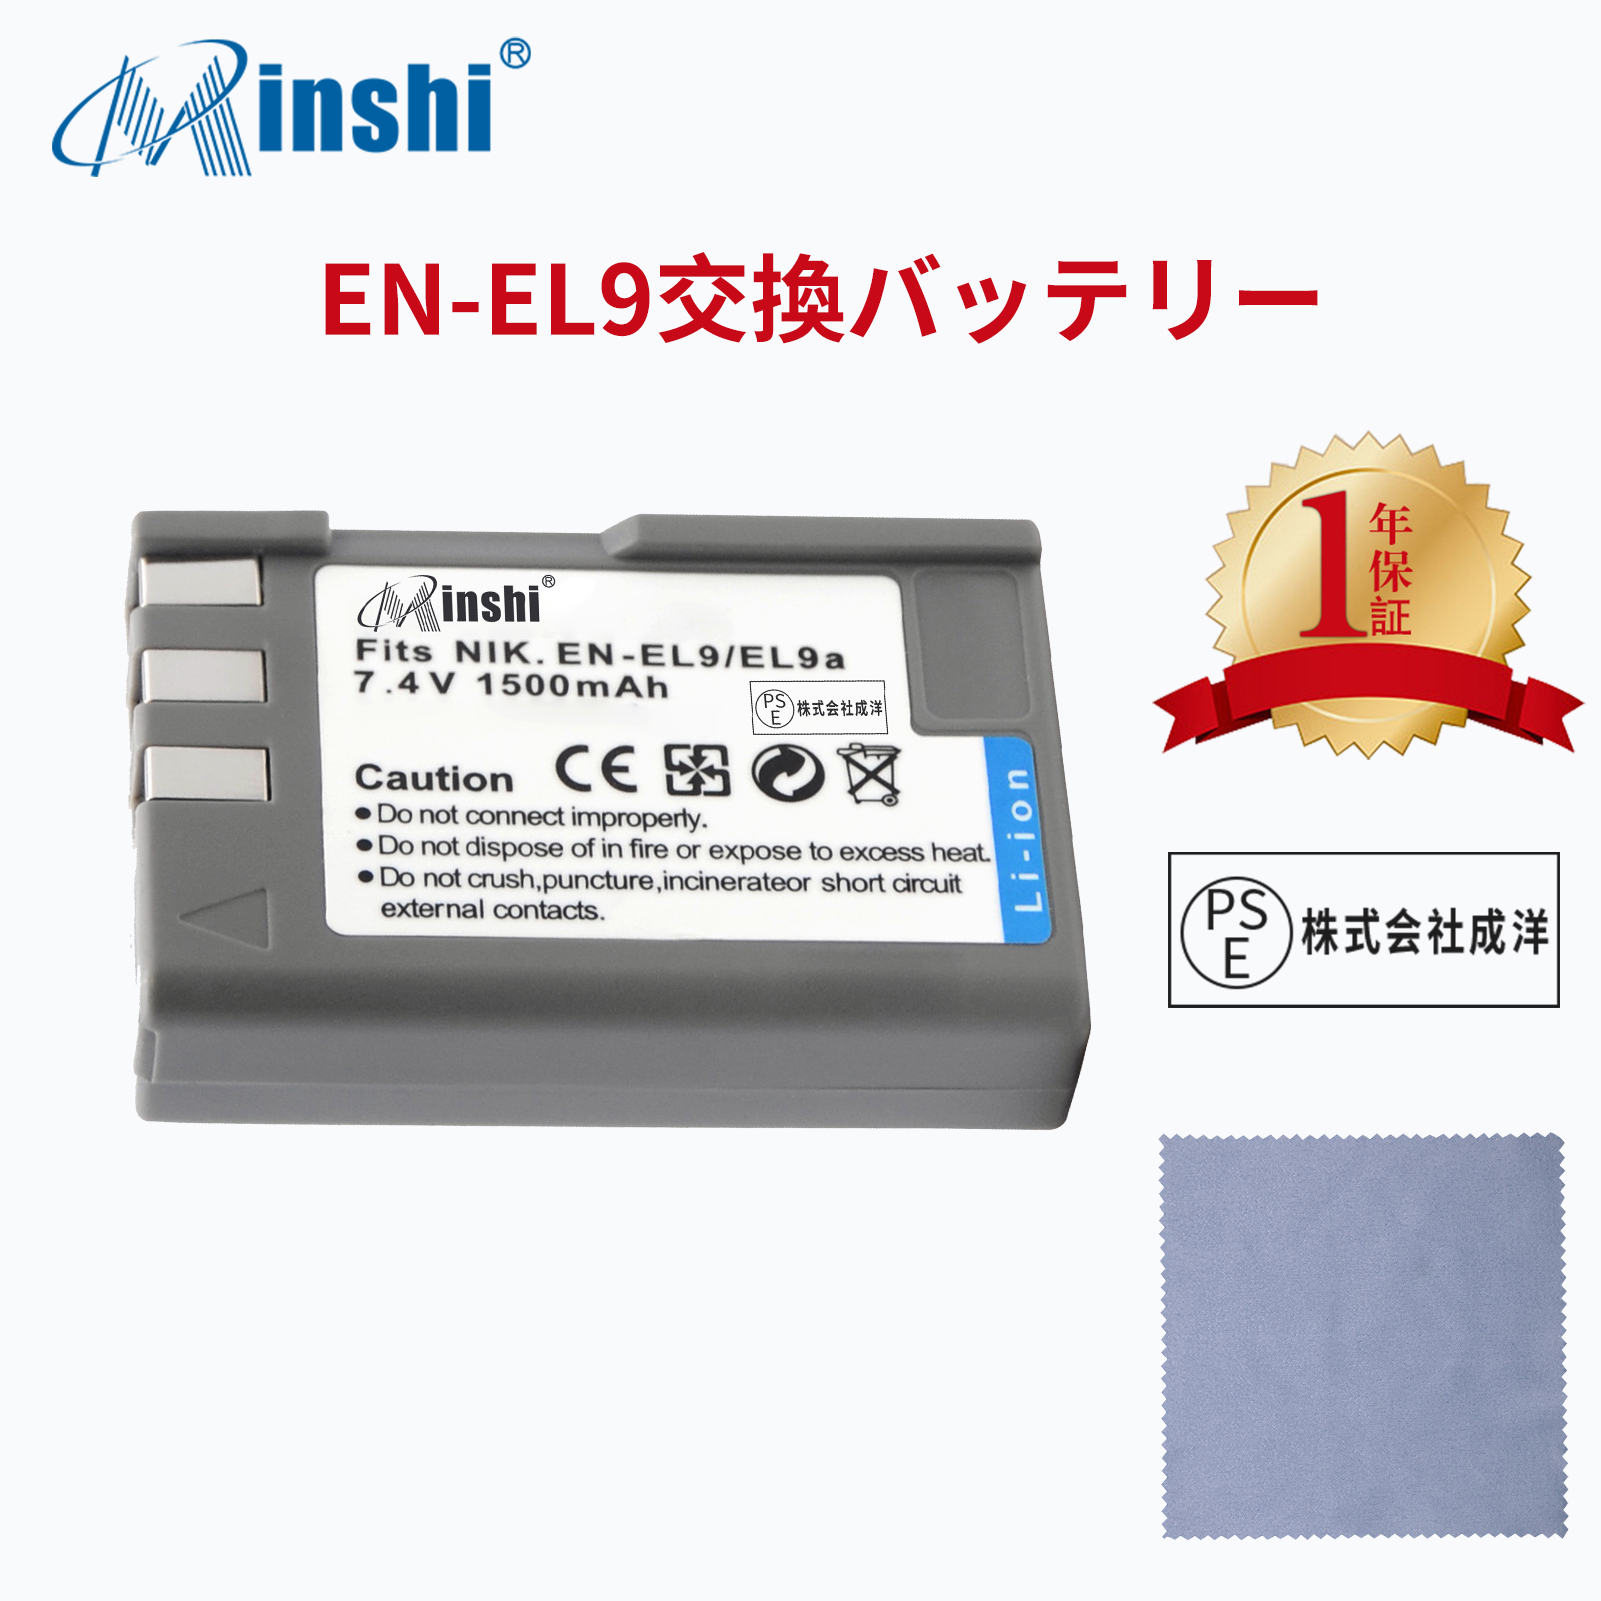 【クロス付き】minshi NIKON D60 EN-EL9a 【1500mAh 7.4V】 D40 D60 D3000 D5000PSE認定済 高品質交換用バッテリー